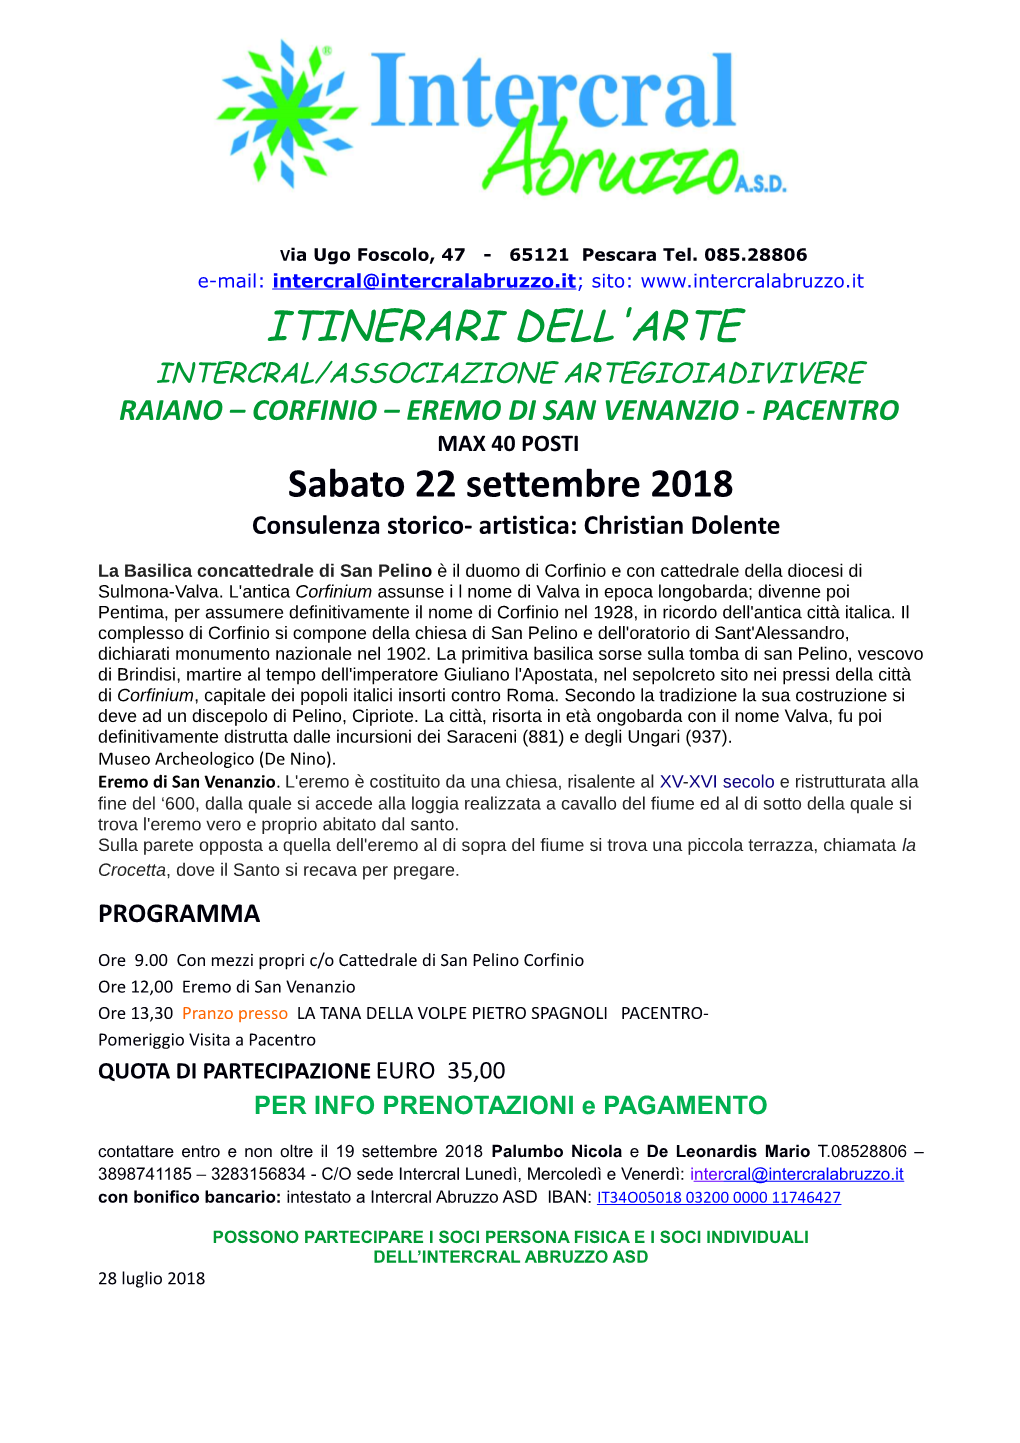 CORFINIO – EREMO DI SAN VENANZIO - PACENTRO MAX 40 POSTI Sabato 22 Settembre 2018 Consulenza Storico- Artistica: Christian Dolente